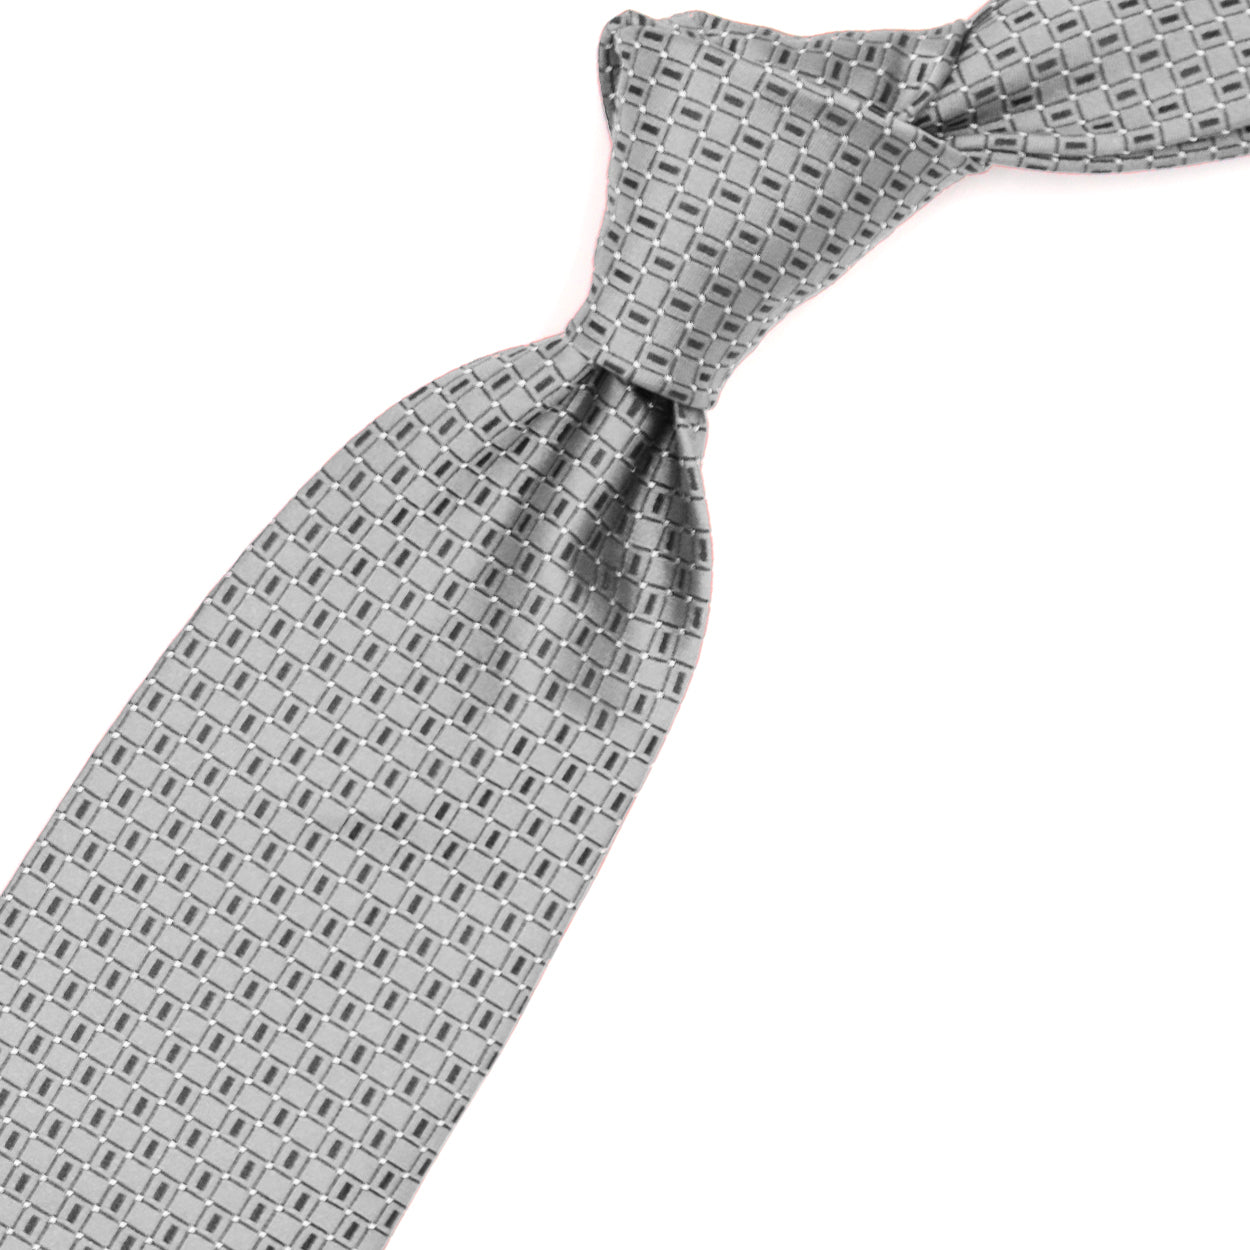 Cravatta grigia con pattern blu e puntini bianchi